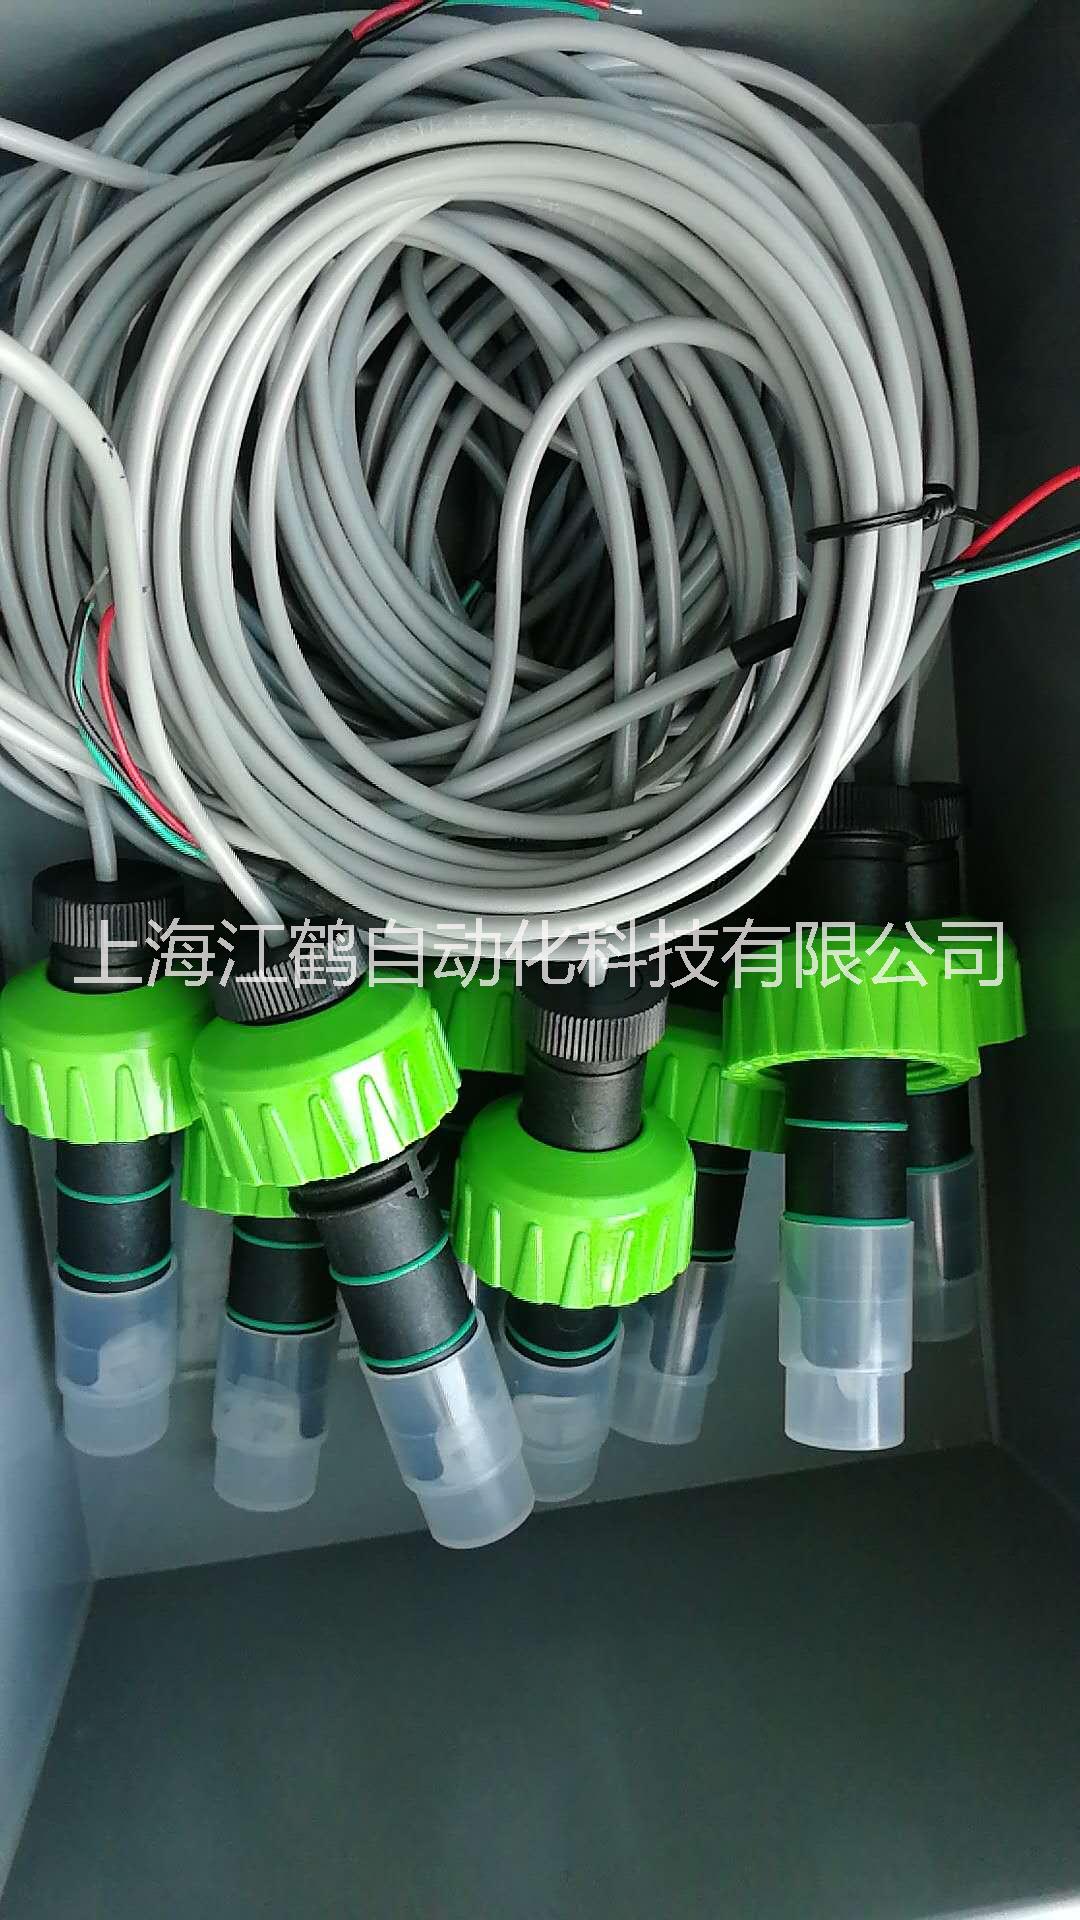 上海市耐腐蚀插入式叶轮流量传感器供应厂家耐腐蚀插入式叶轮流量传感器供应